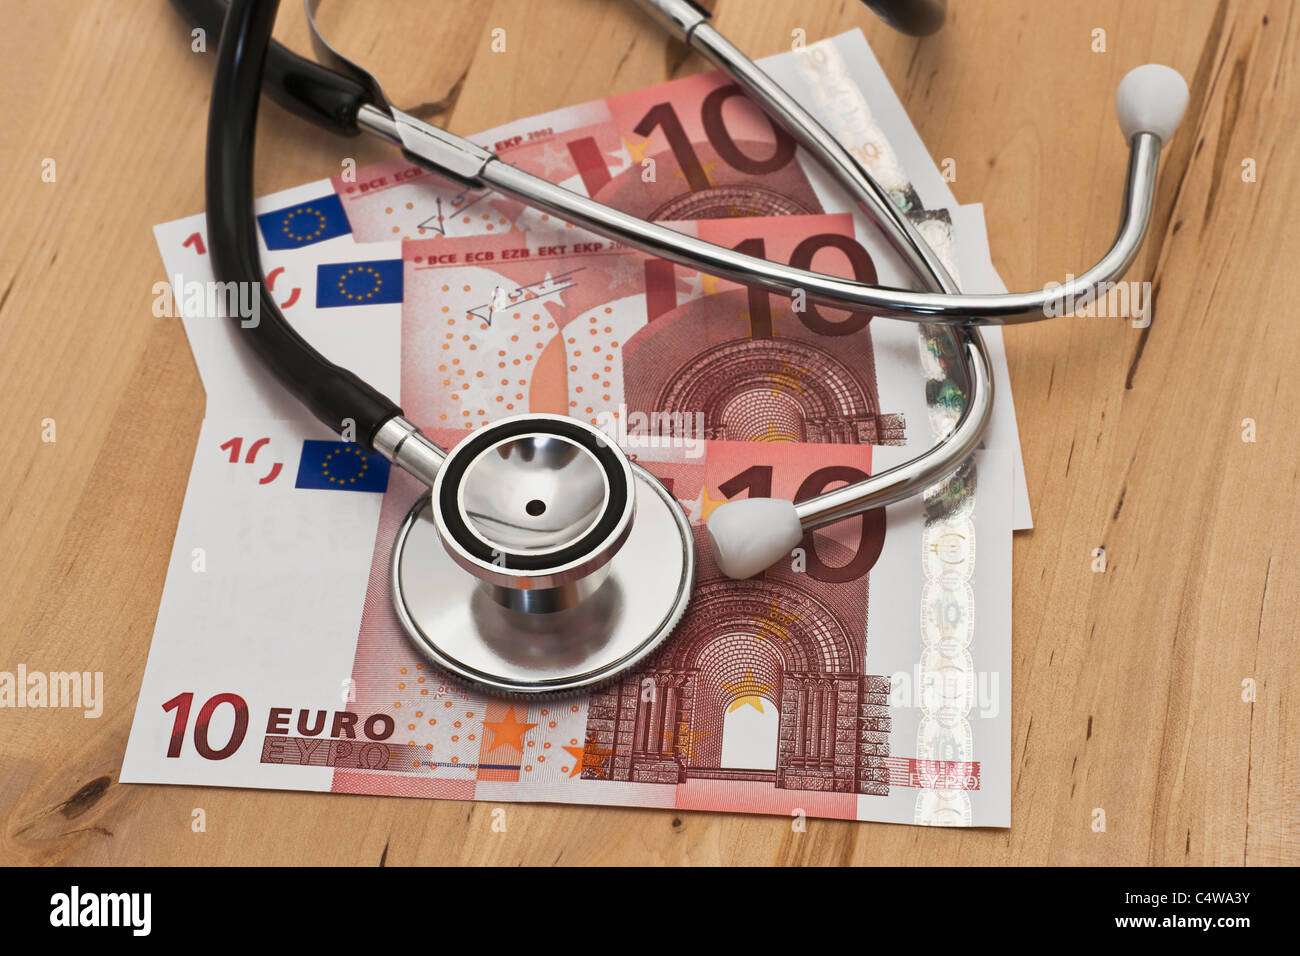 ein Stethoskop liegt auf mehreren zehn Euro Scheinen | some ten euro banknotes, a stethoscope is on it Stock Photo